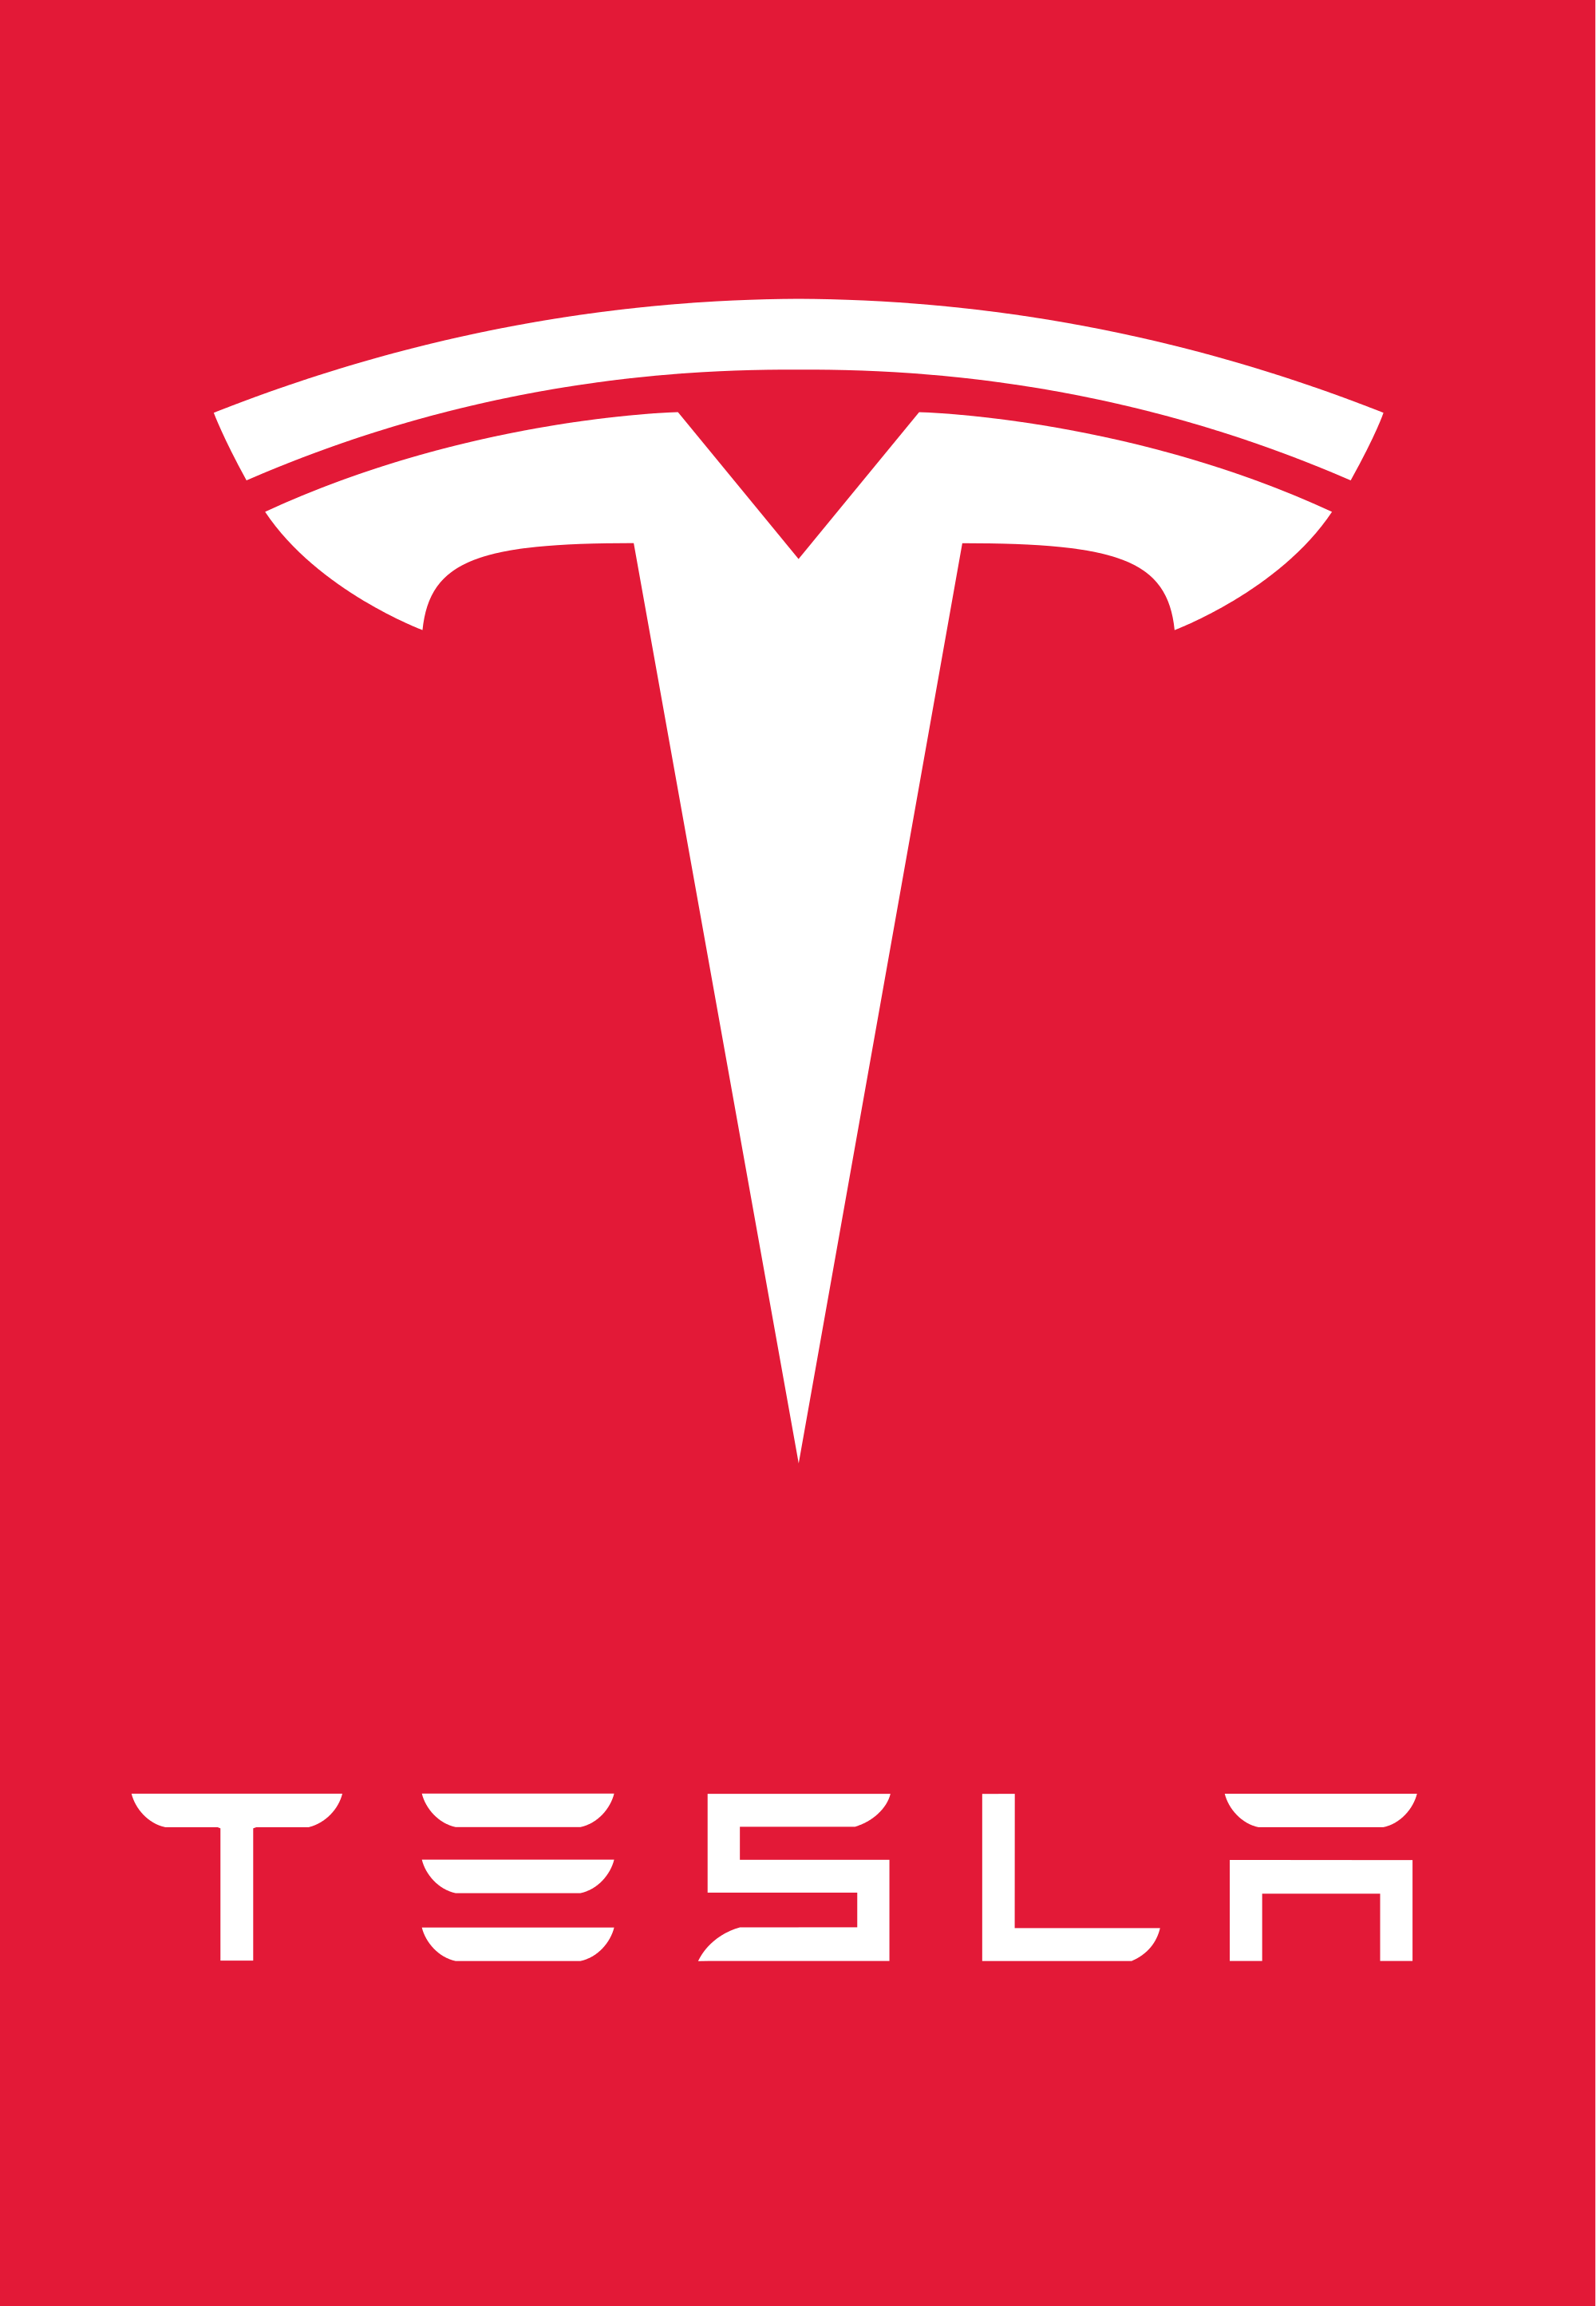 Red Letter Brand Names Logo - Tesla Logo, Tesla Car Symbol Meaning and History | Car Brand Names.com